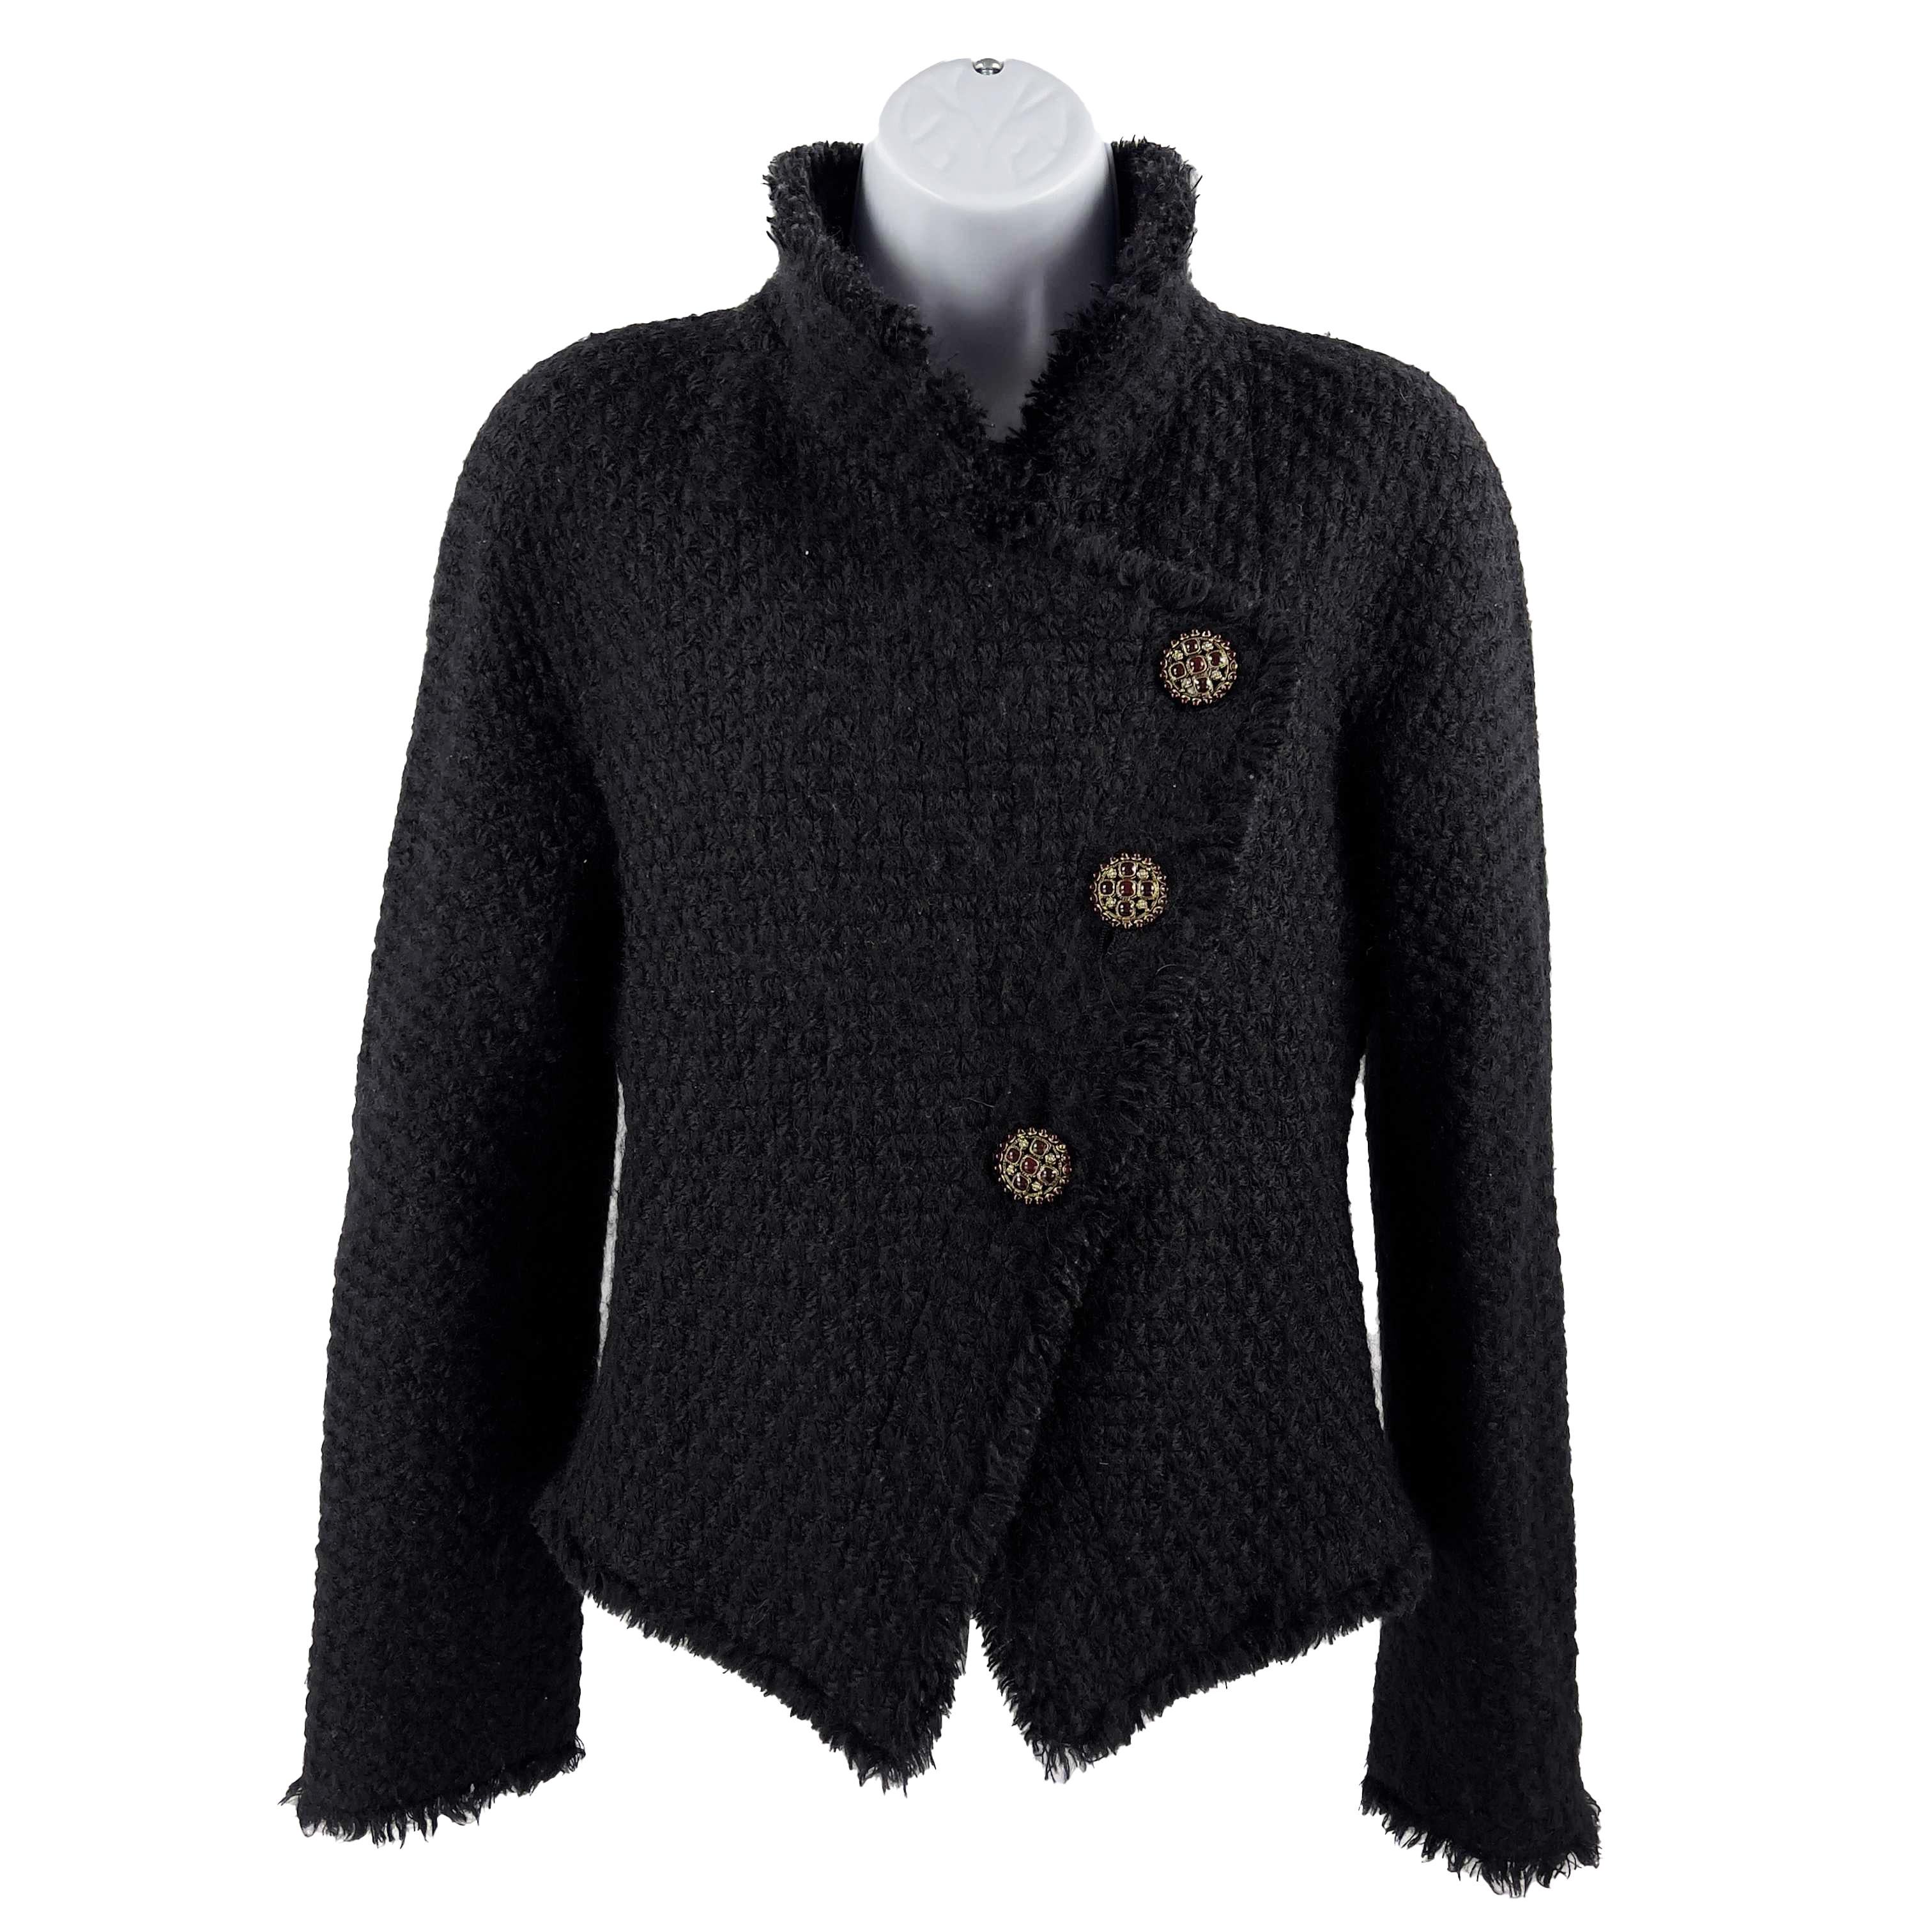 CHANEL -13A Paris-Edinburgh Black Tweed Plaid Jacket - Gripoix Buttons - 36 US 6 3